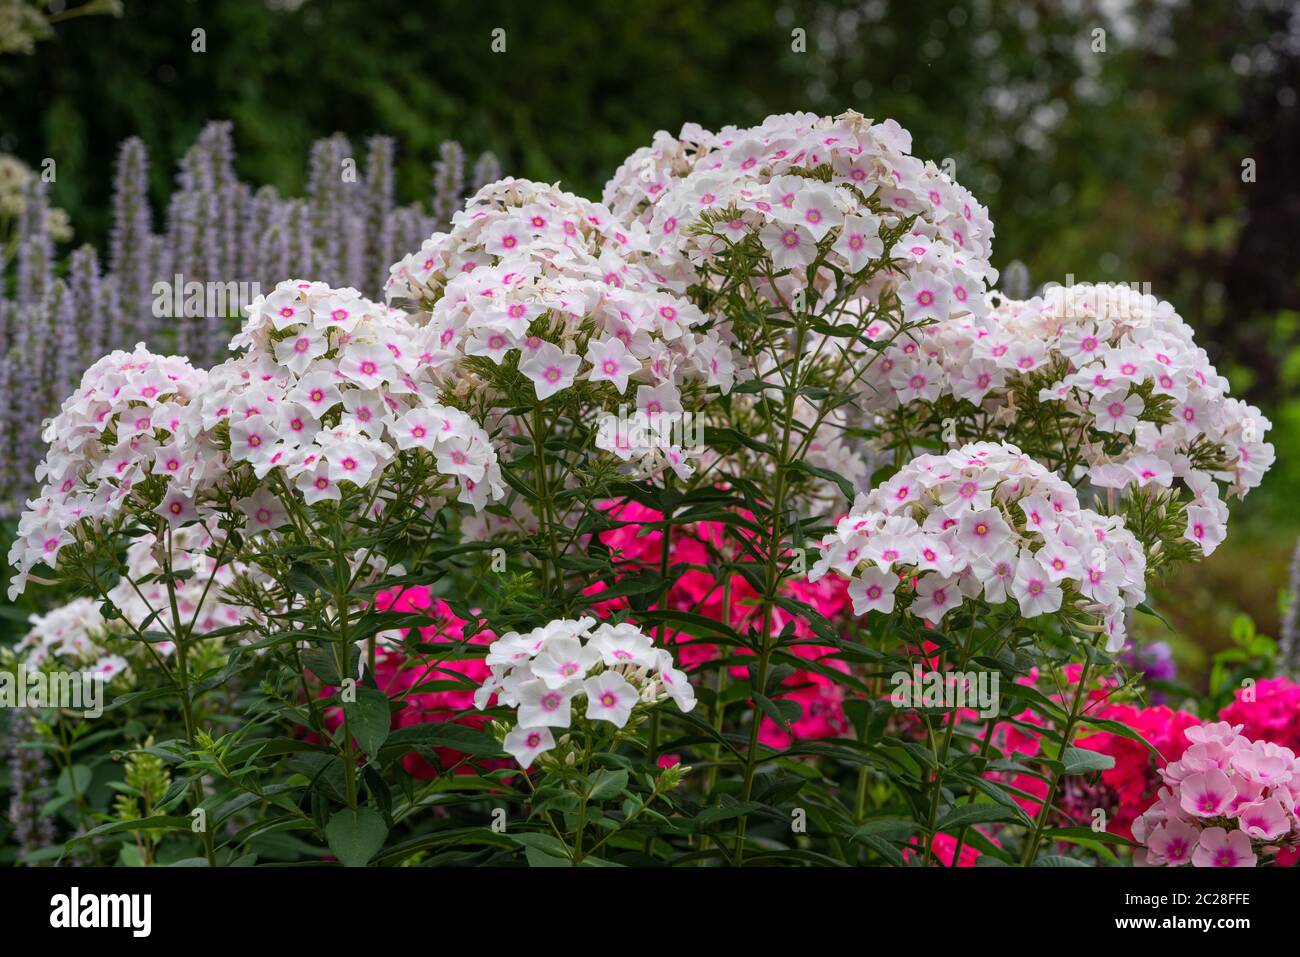 Garden Phlox (Phlox paniculata), flowers of summer Stock Photo